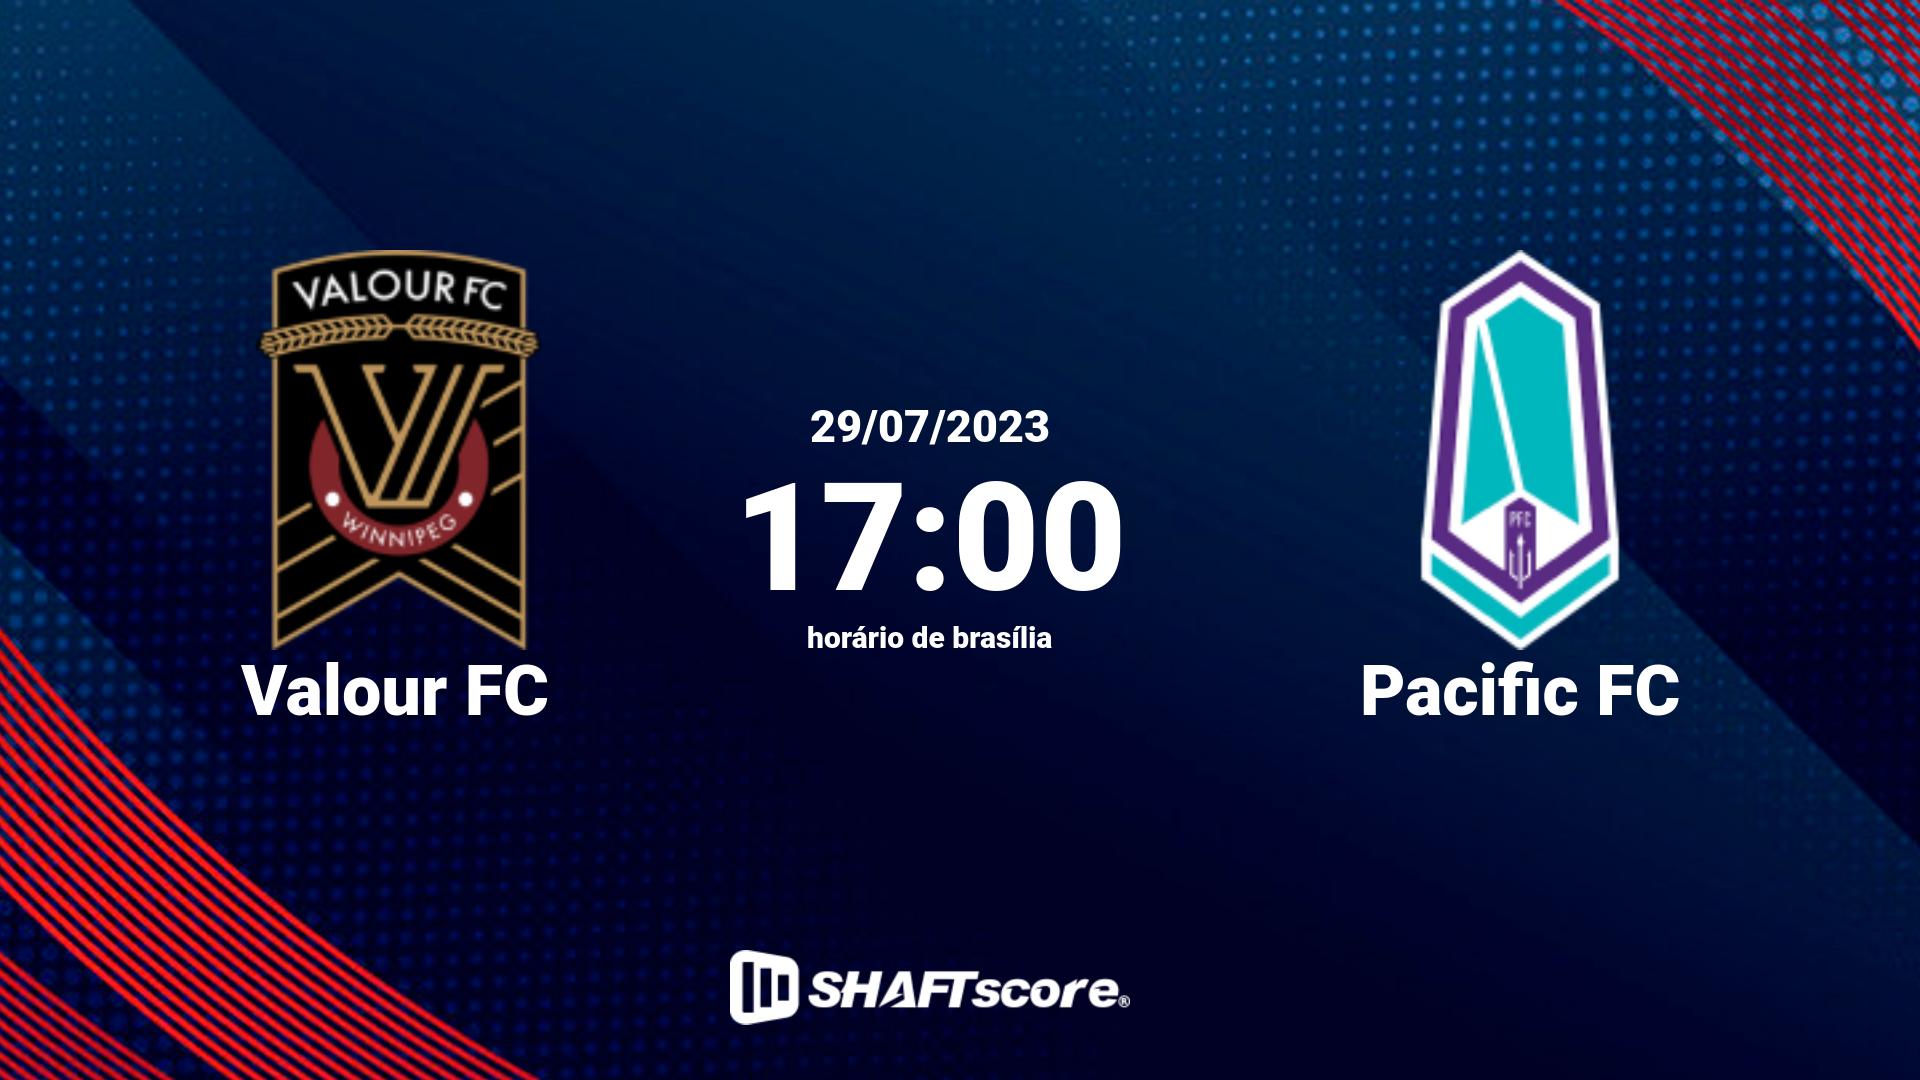 Estatísticas do jogo Valour FC vs Pacific FC 29.07 17:00